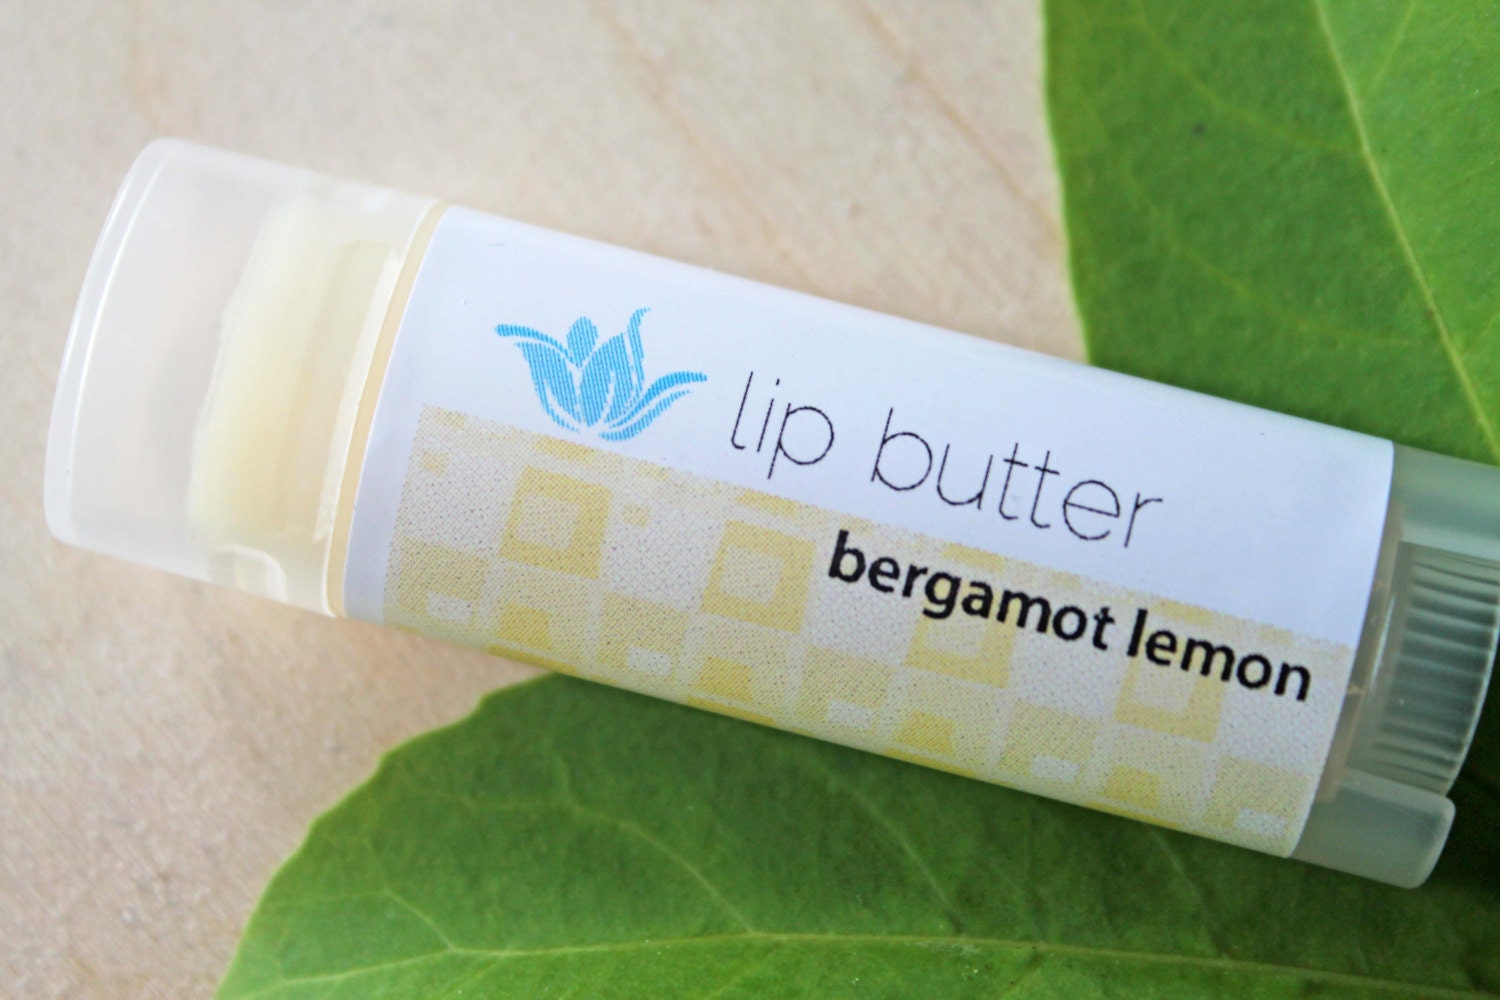 Bergamot Lemon lip butter, natural vegan gluten-free lip balm, citrus fruit lip gloss